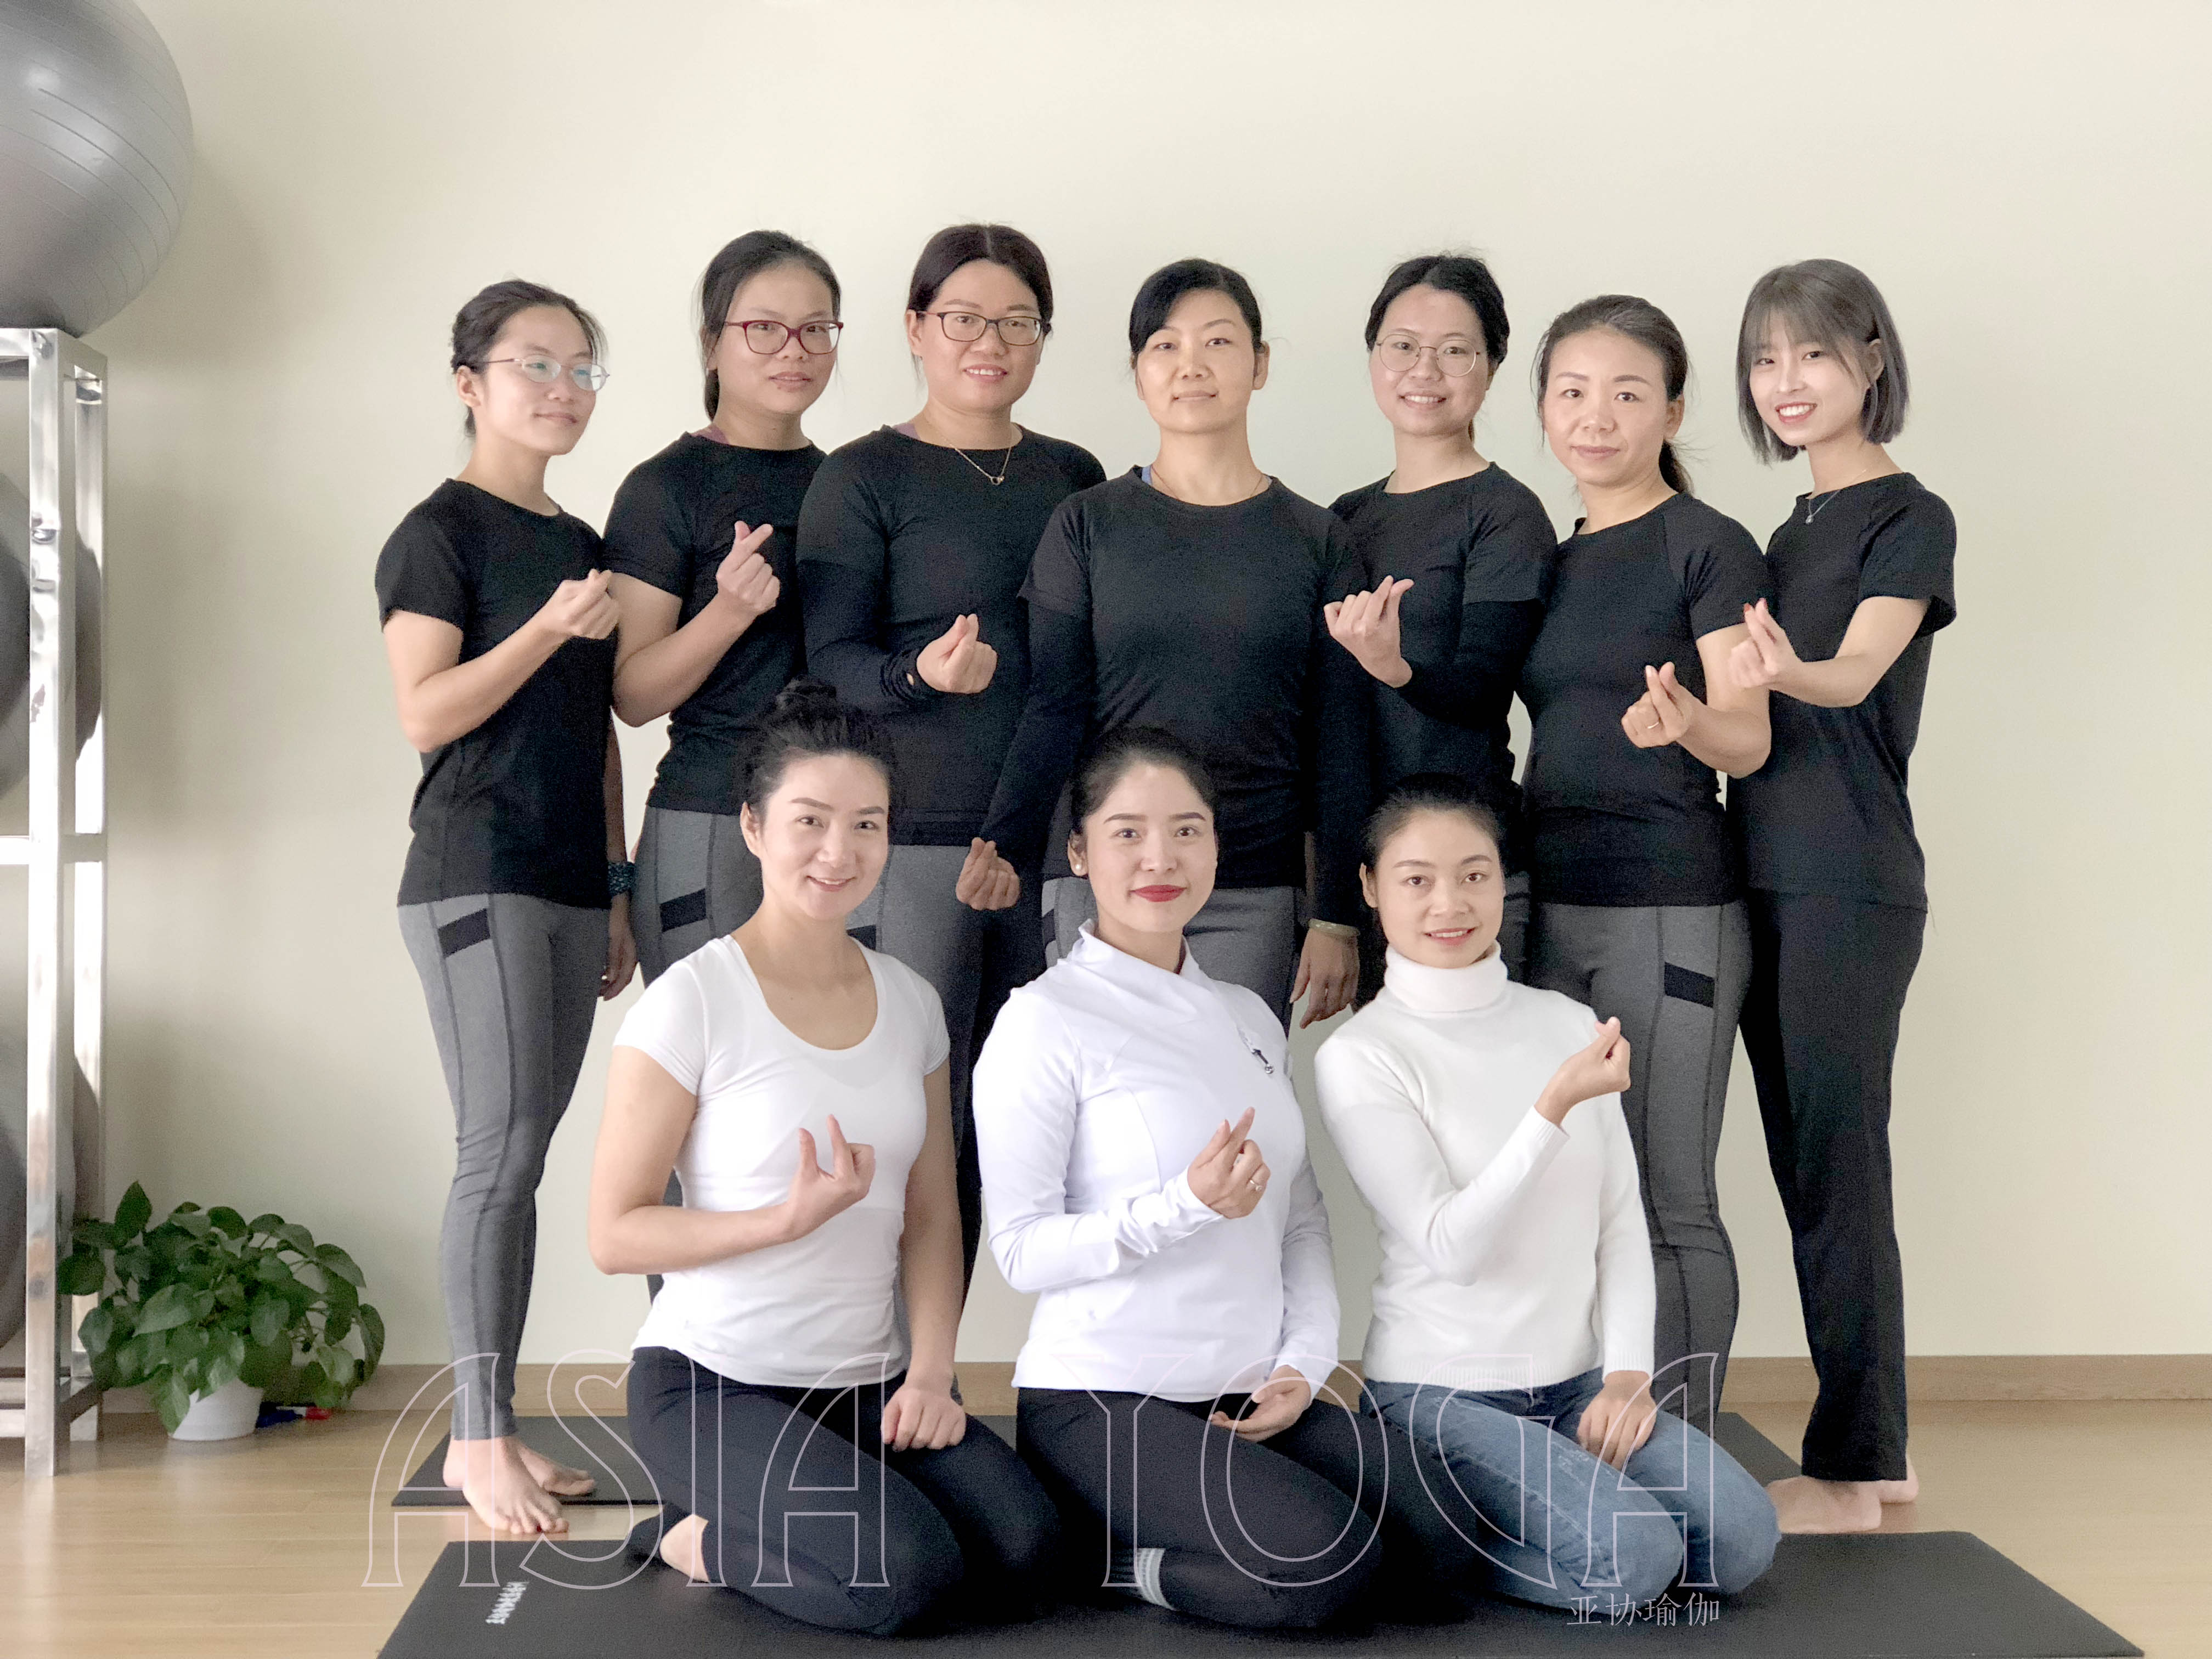 深圳亚协瑜伽第229届瑜伽教练培训周末班开班啦！